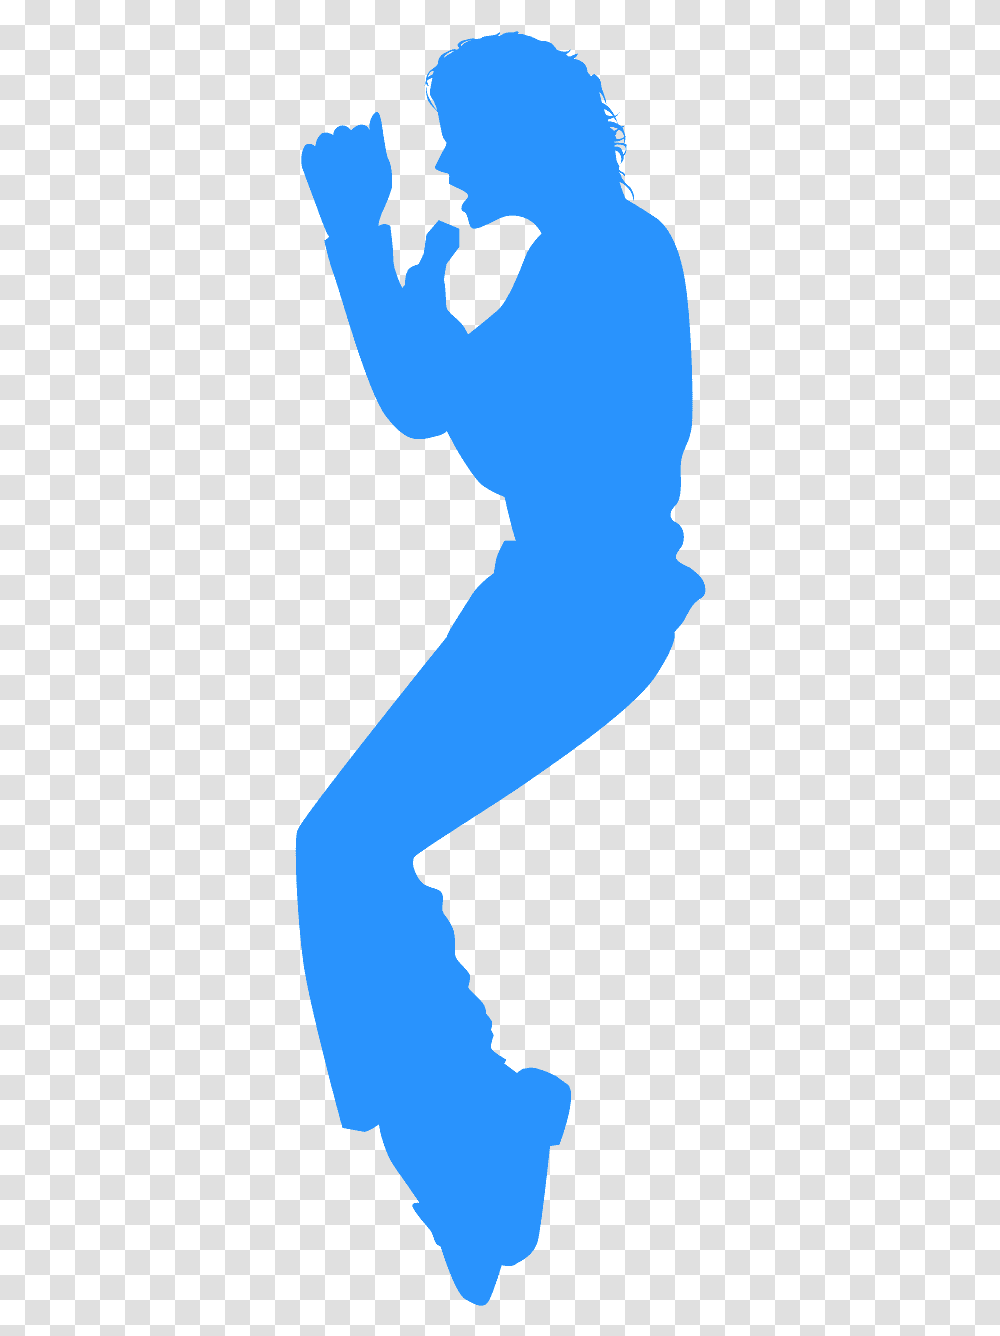 Michael Jackson Silhouette Kleur, Arm, Person, Hand, Sleeve Transparent Png